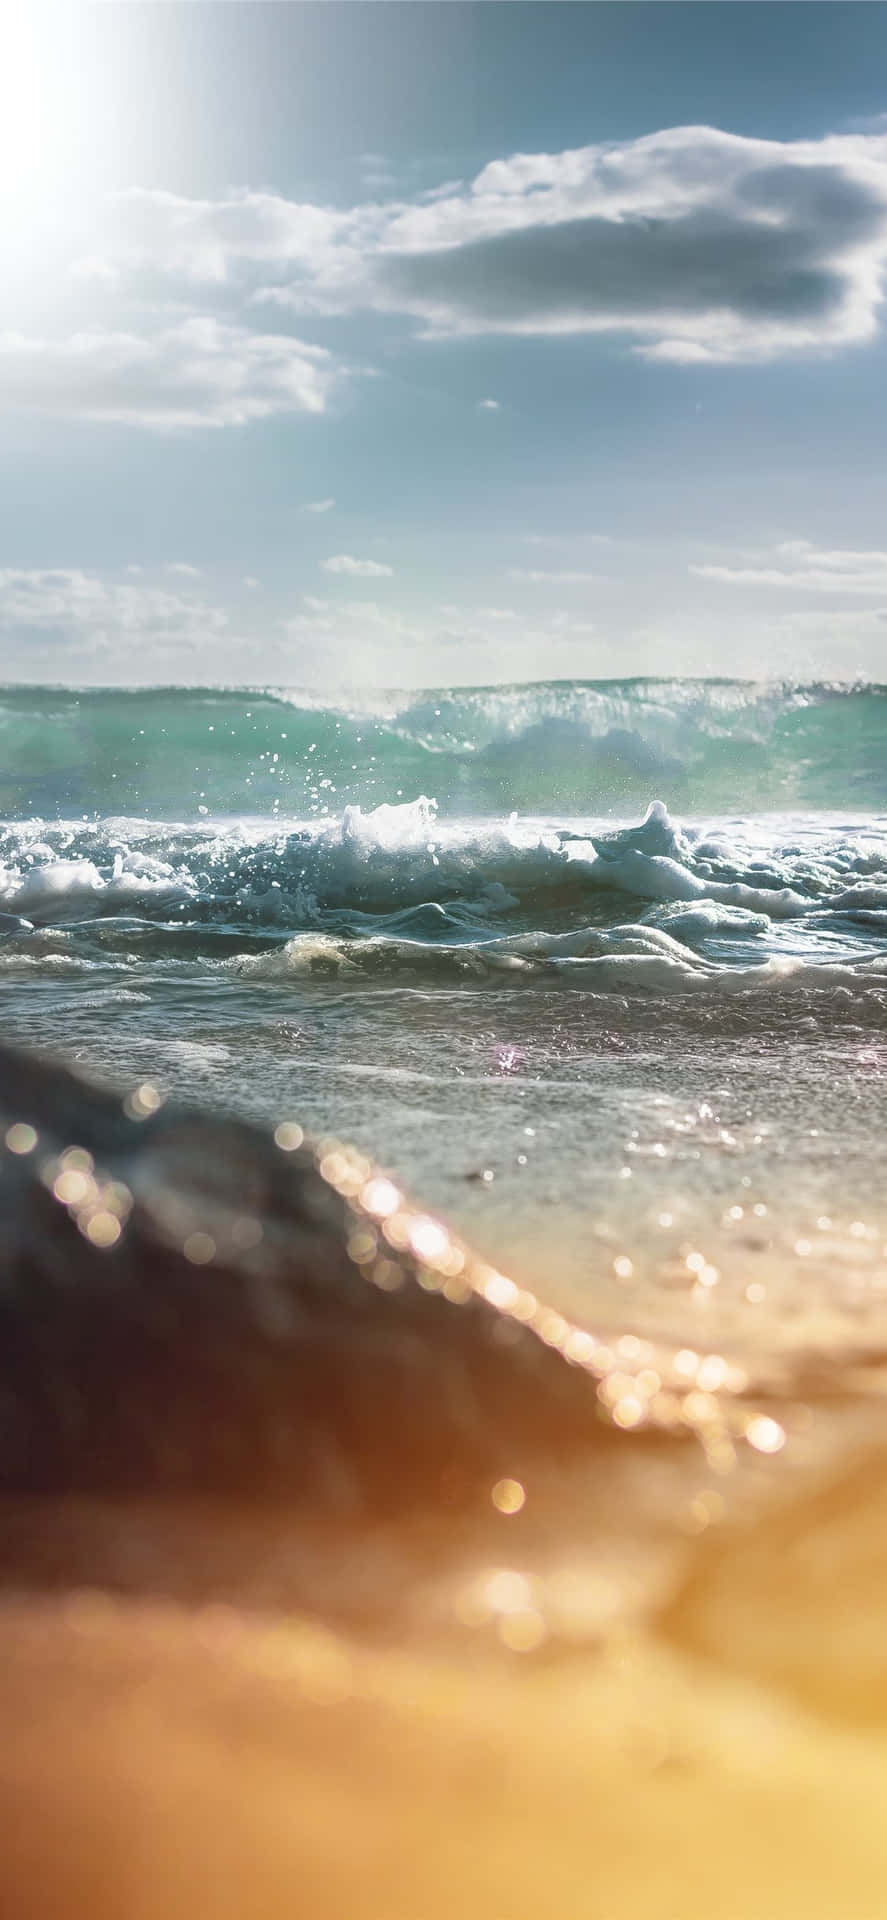 Baggrundsvinklen af bølgen fra Malibu Iphone X